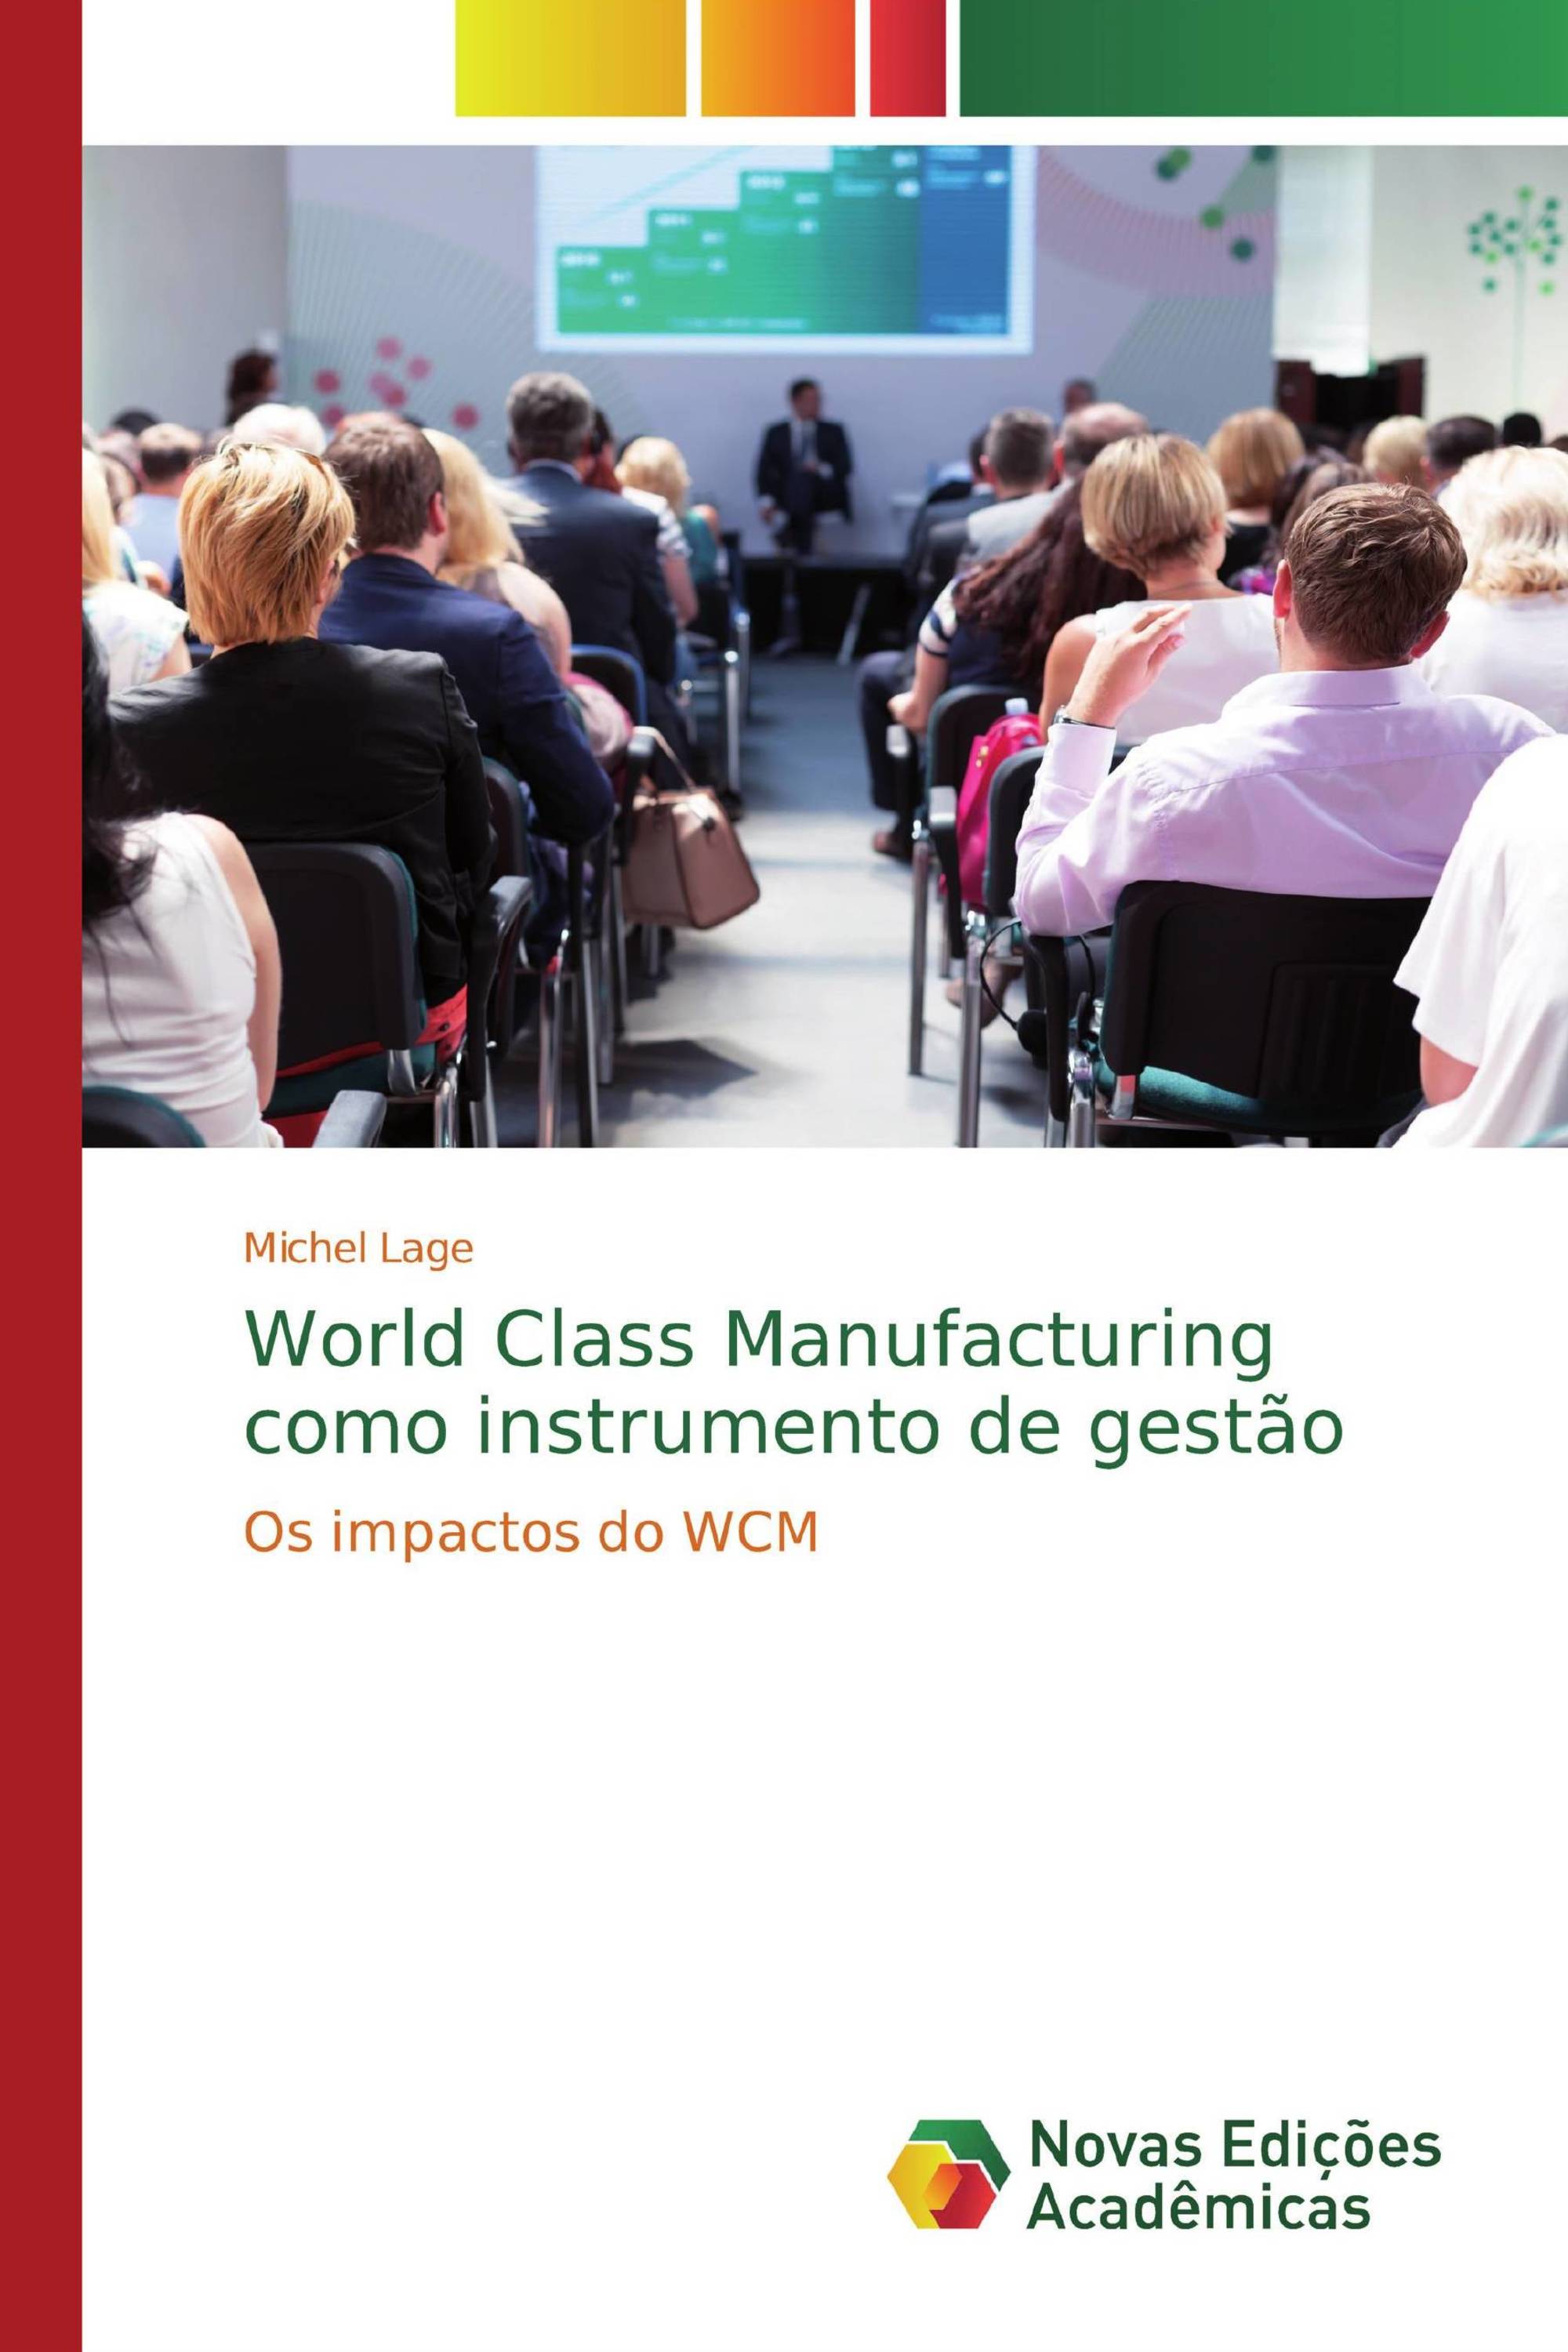 Guia de Consulta das Ferramentas do WCM (World Class Manufacturing) -  Ferramentas para Gestão da Melhoria Contínua